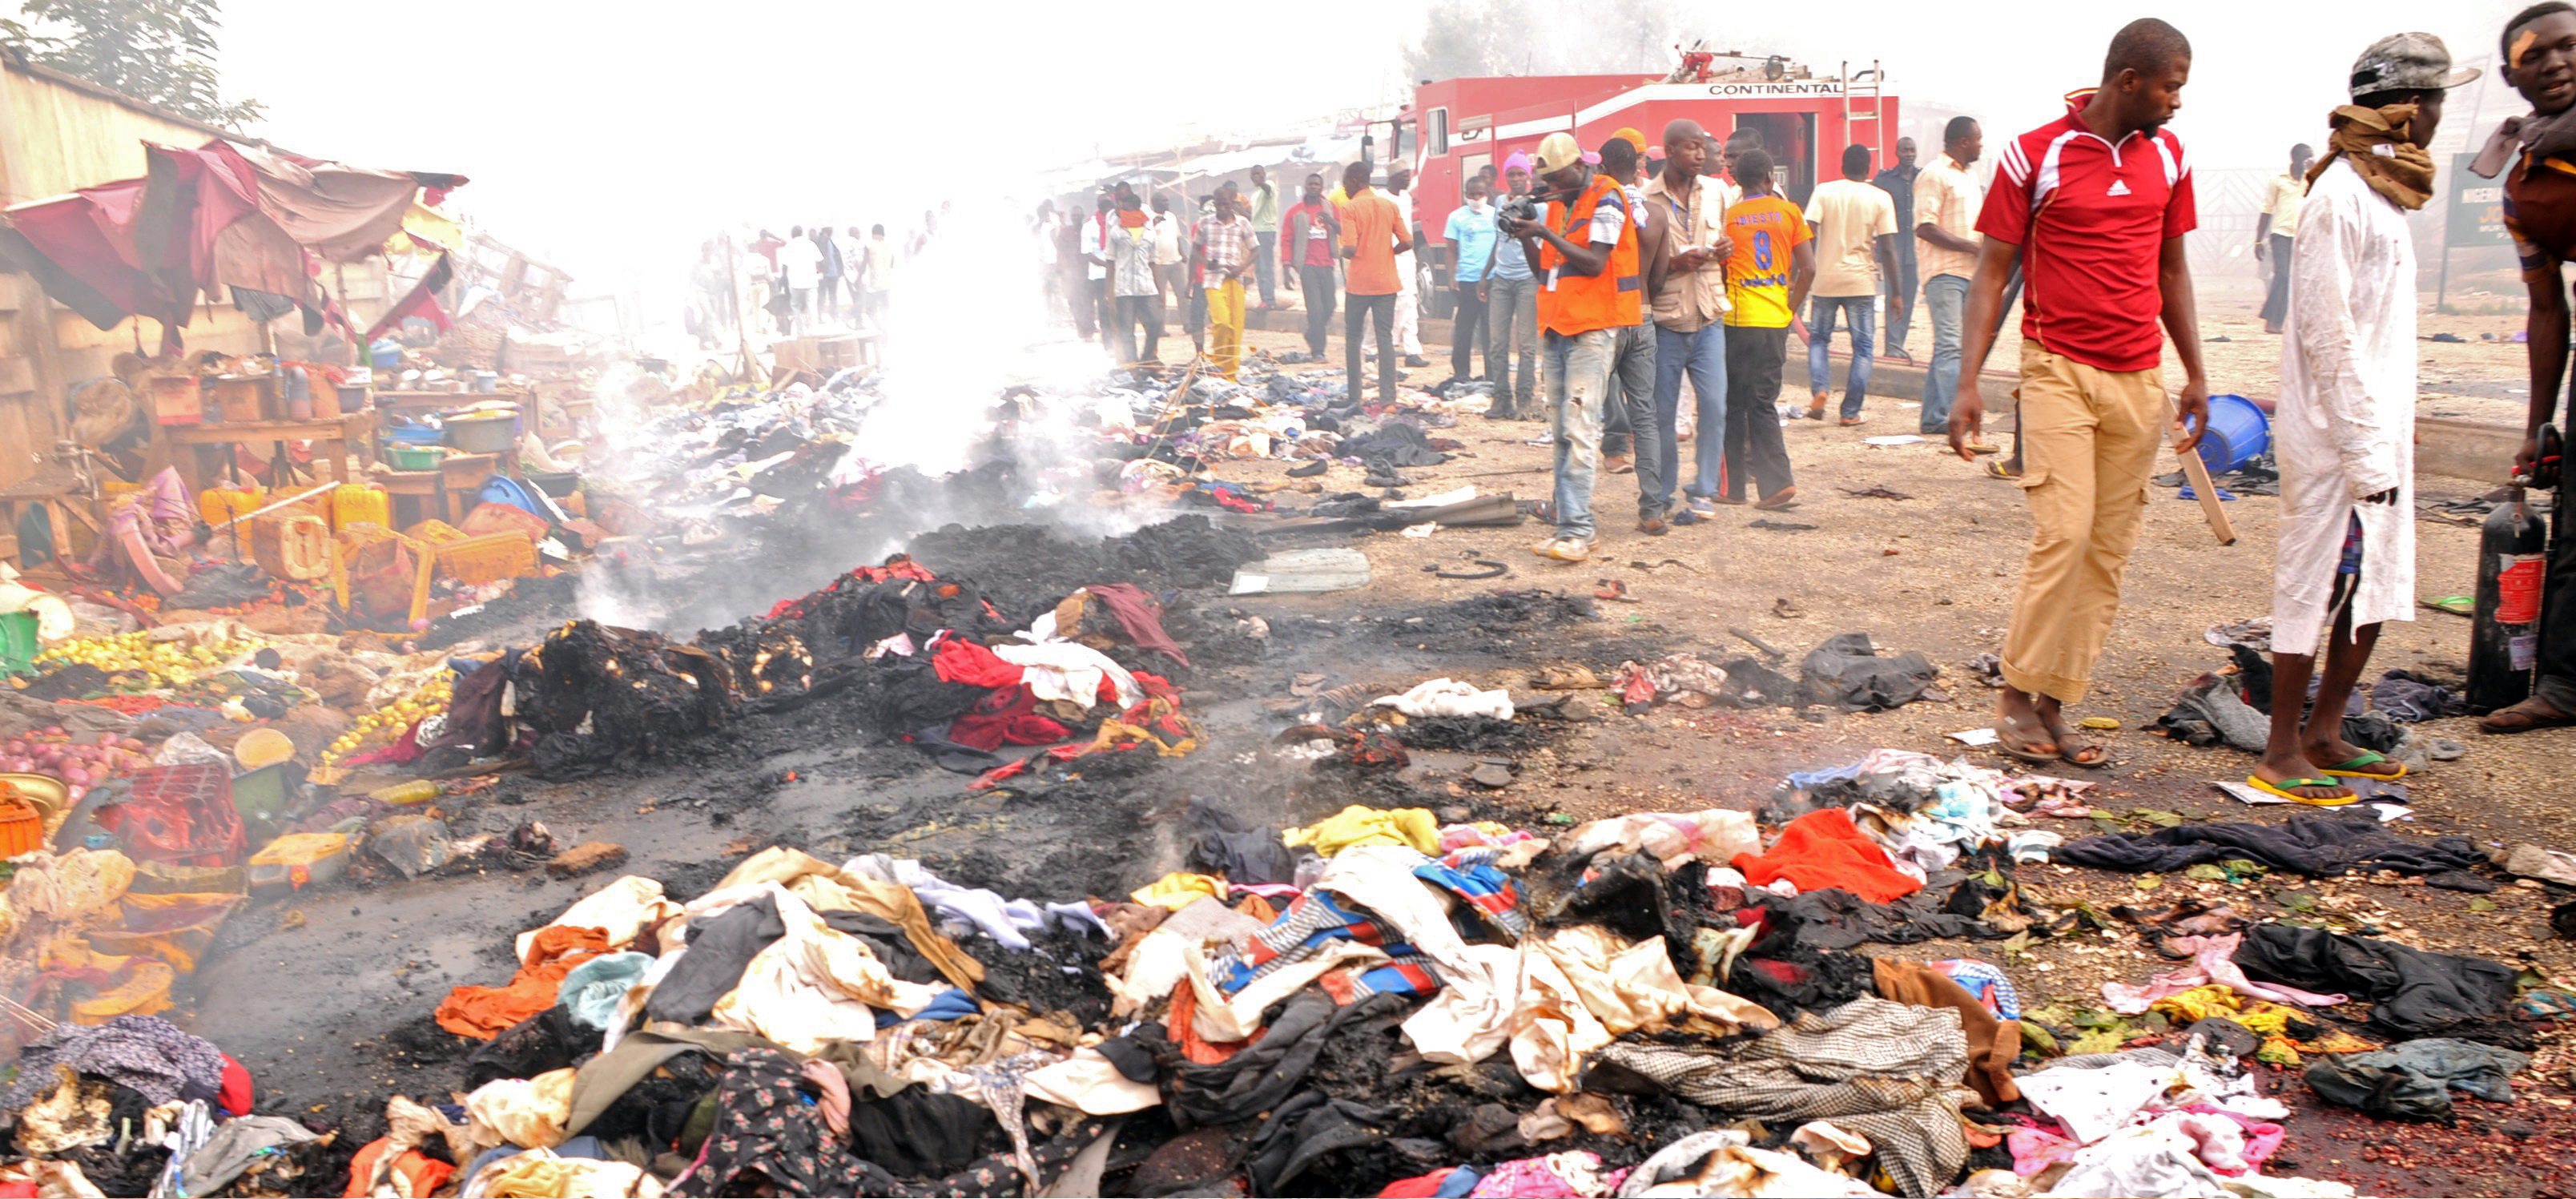 Νιγηρία:Αιματηρή επίθεση με 17 νεκρούς της Μπόκο Χαράμ